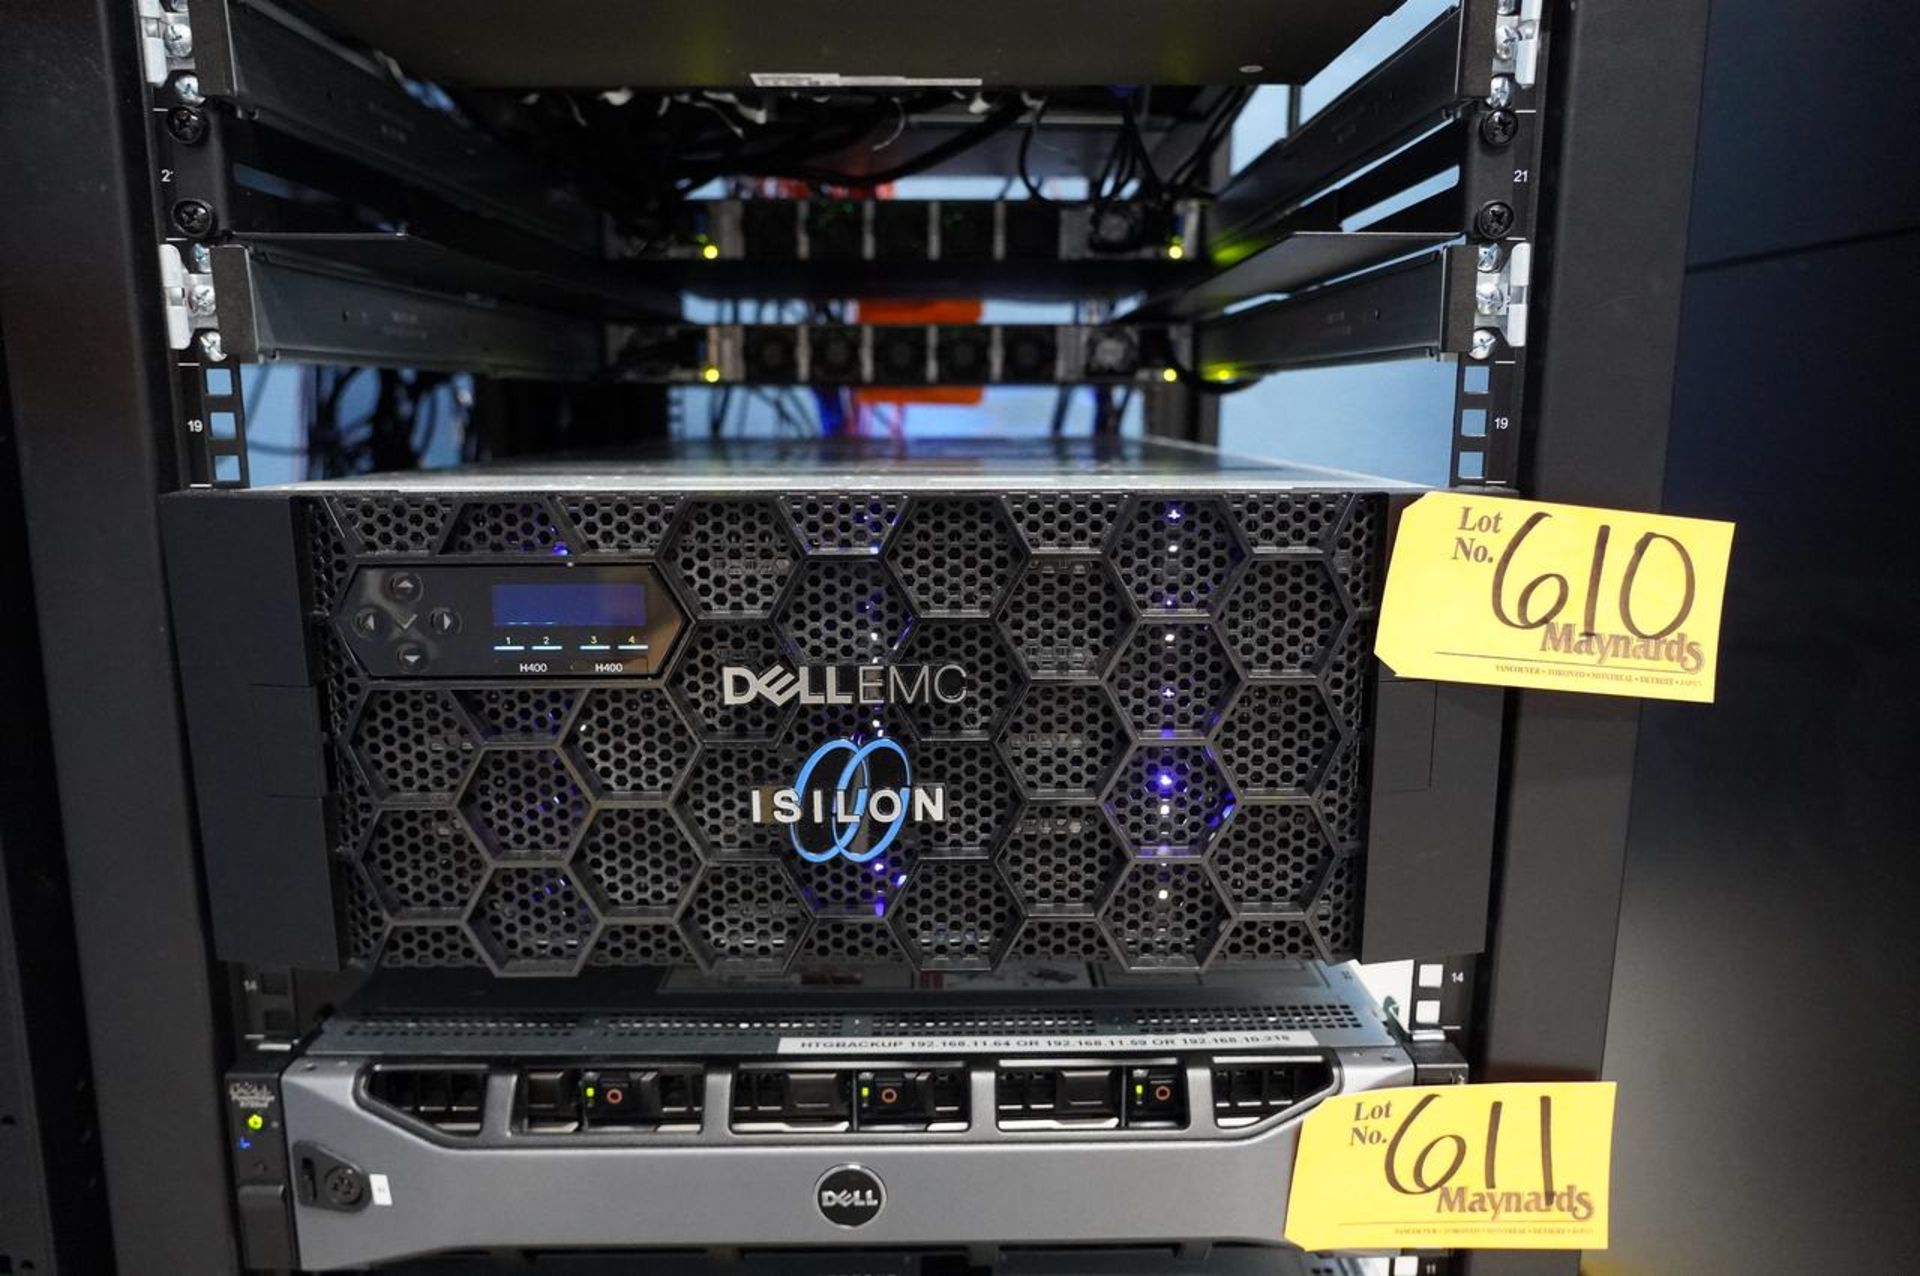 Dell Dell/EMC Isilon H400 Enterprise Storage